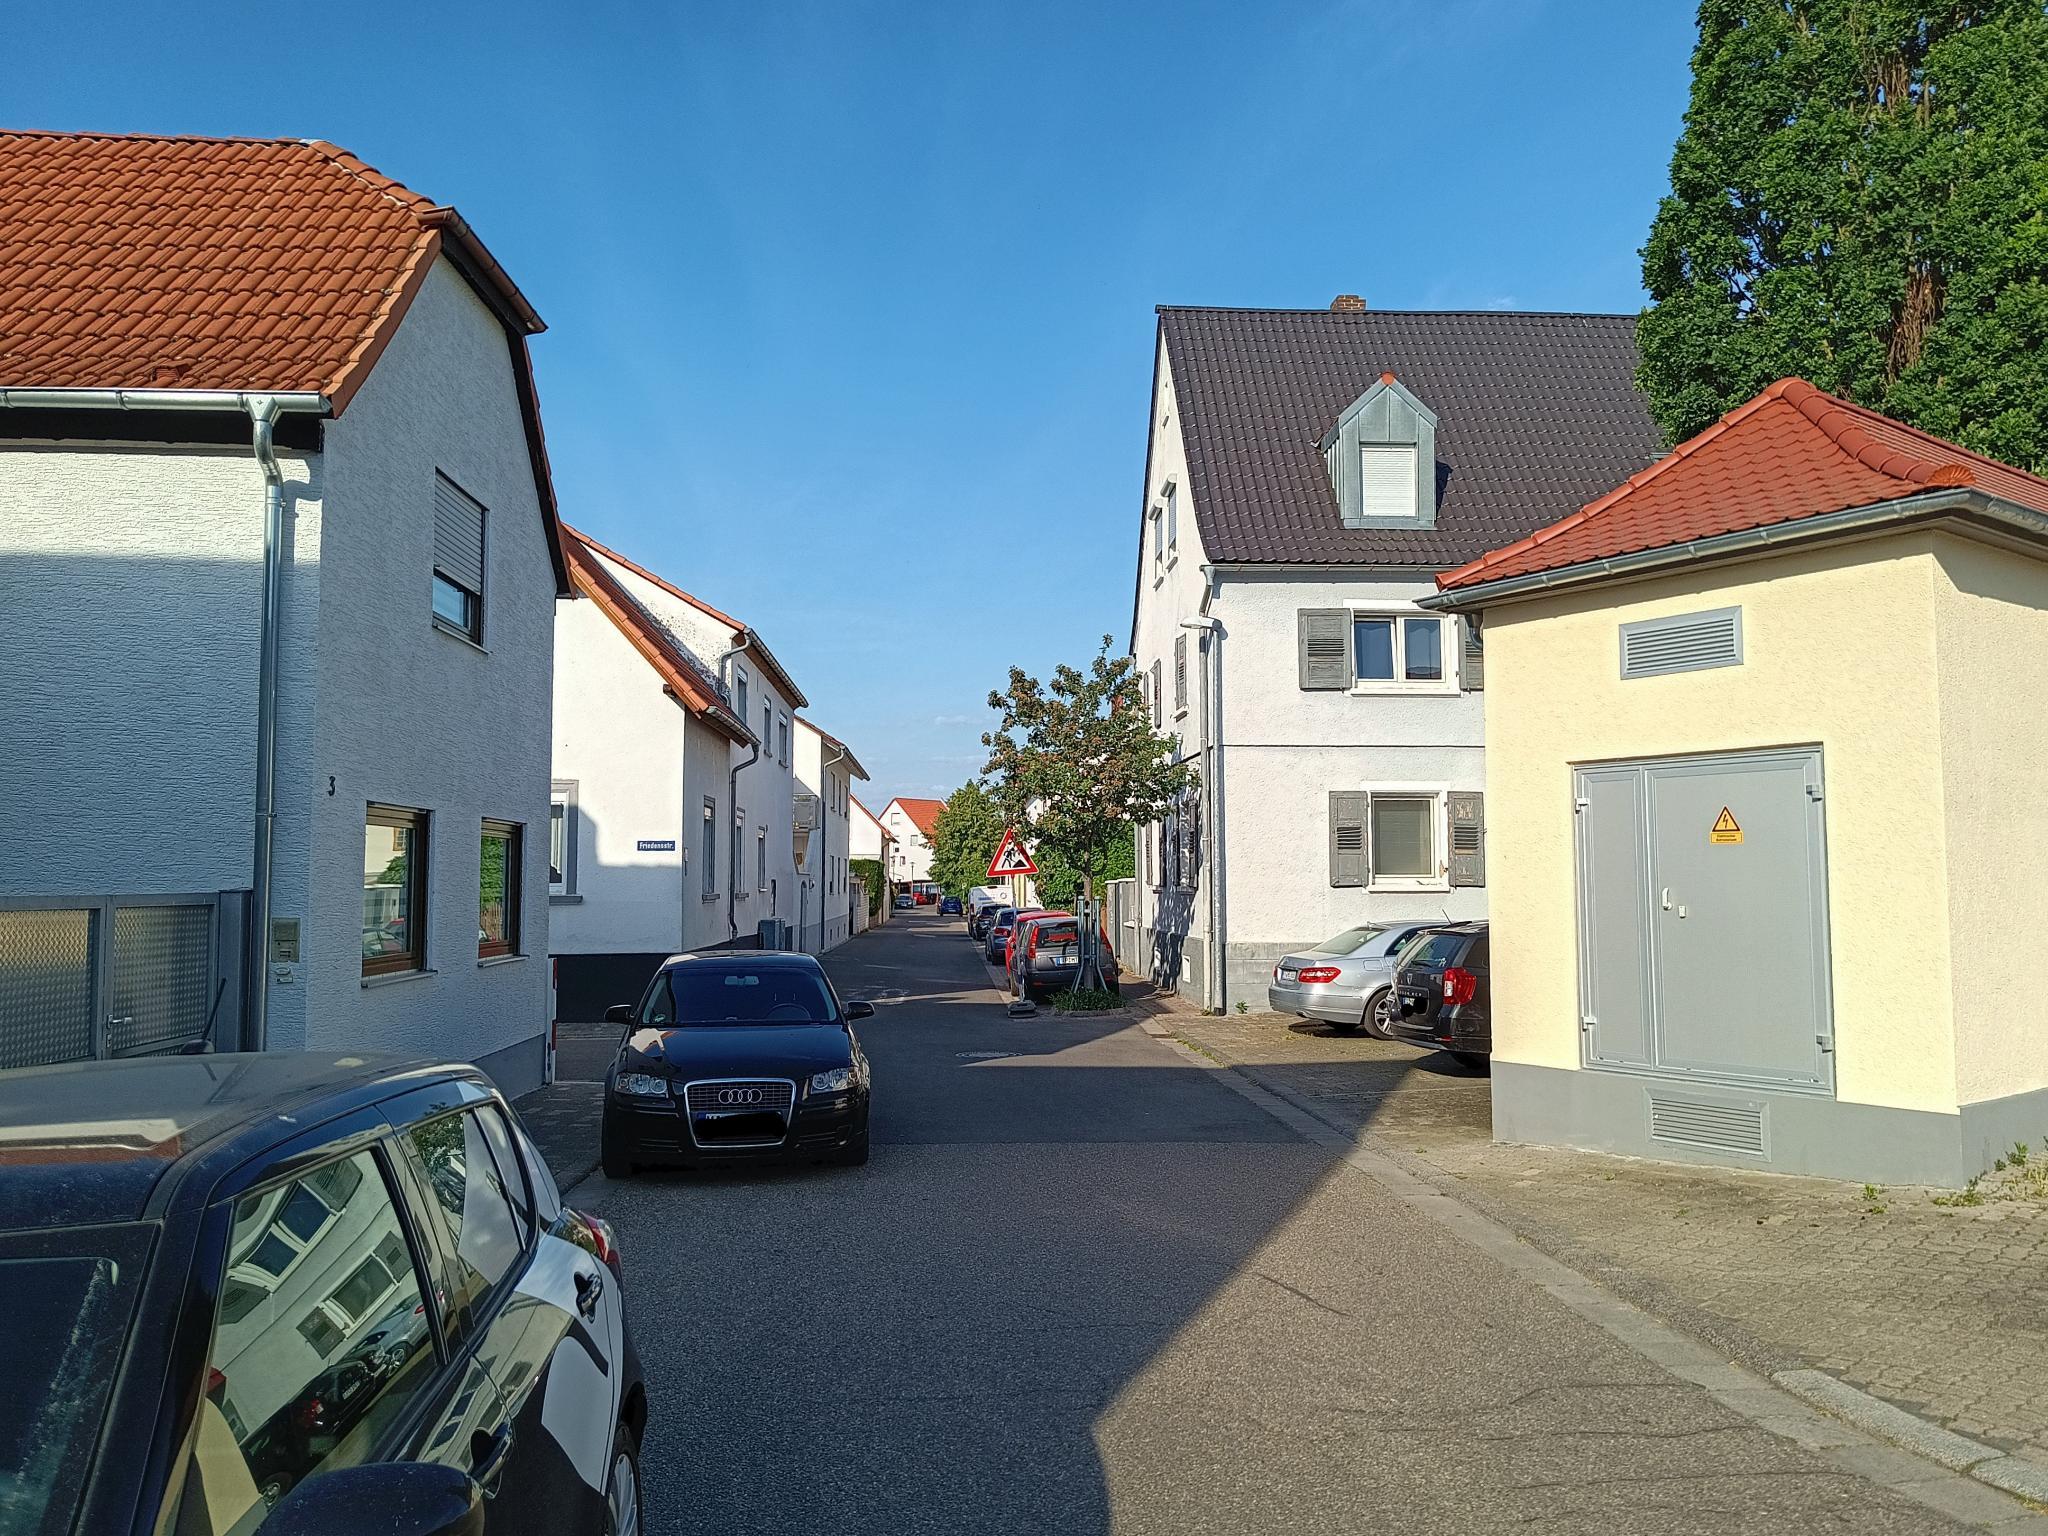 Datei:Baumgartenweg Schifferstadt.jpeg